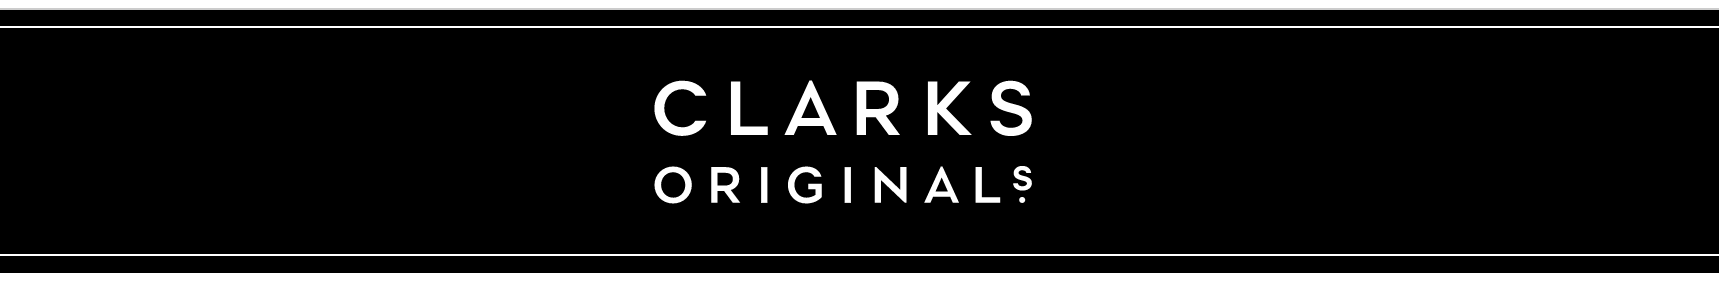 clark's discount